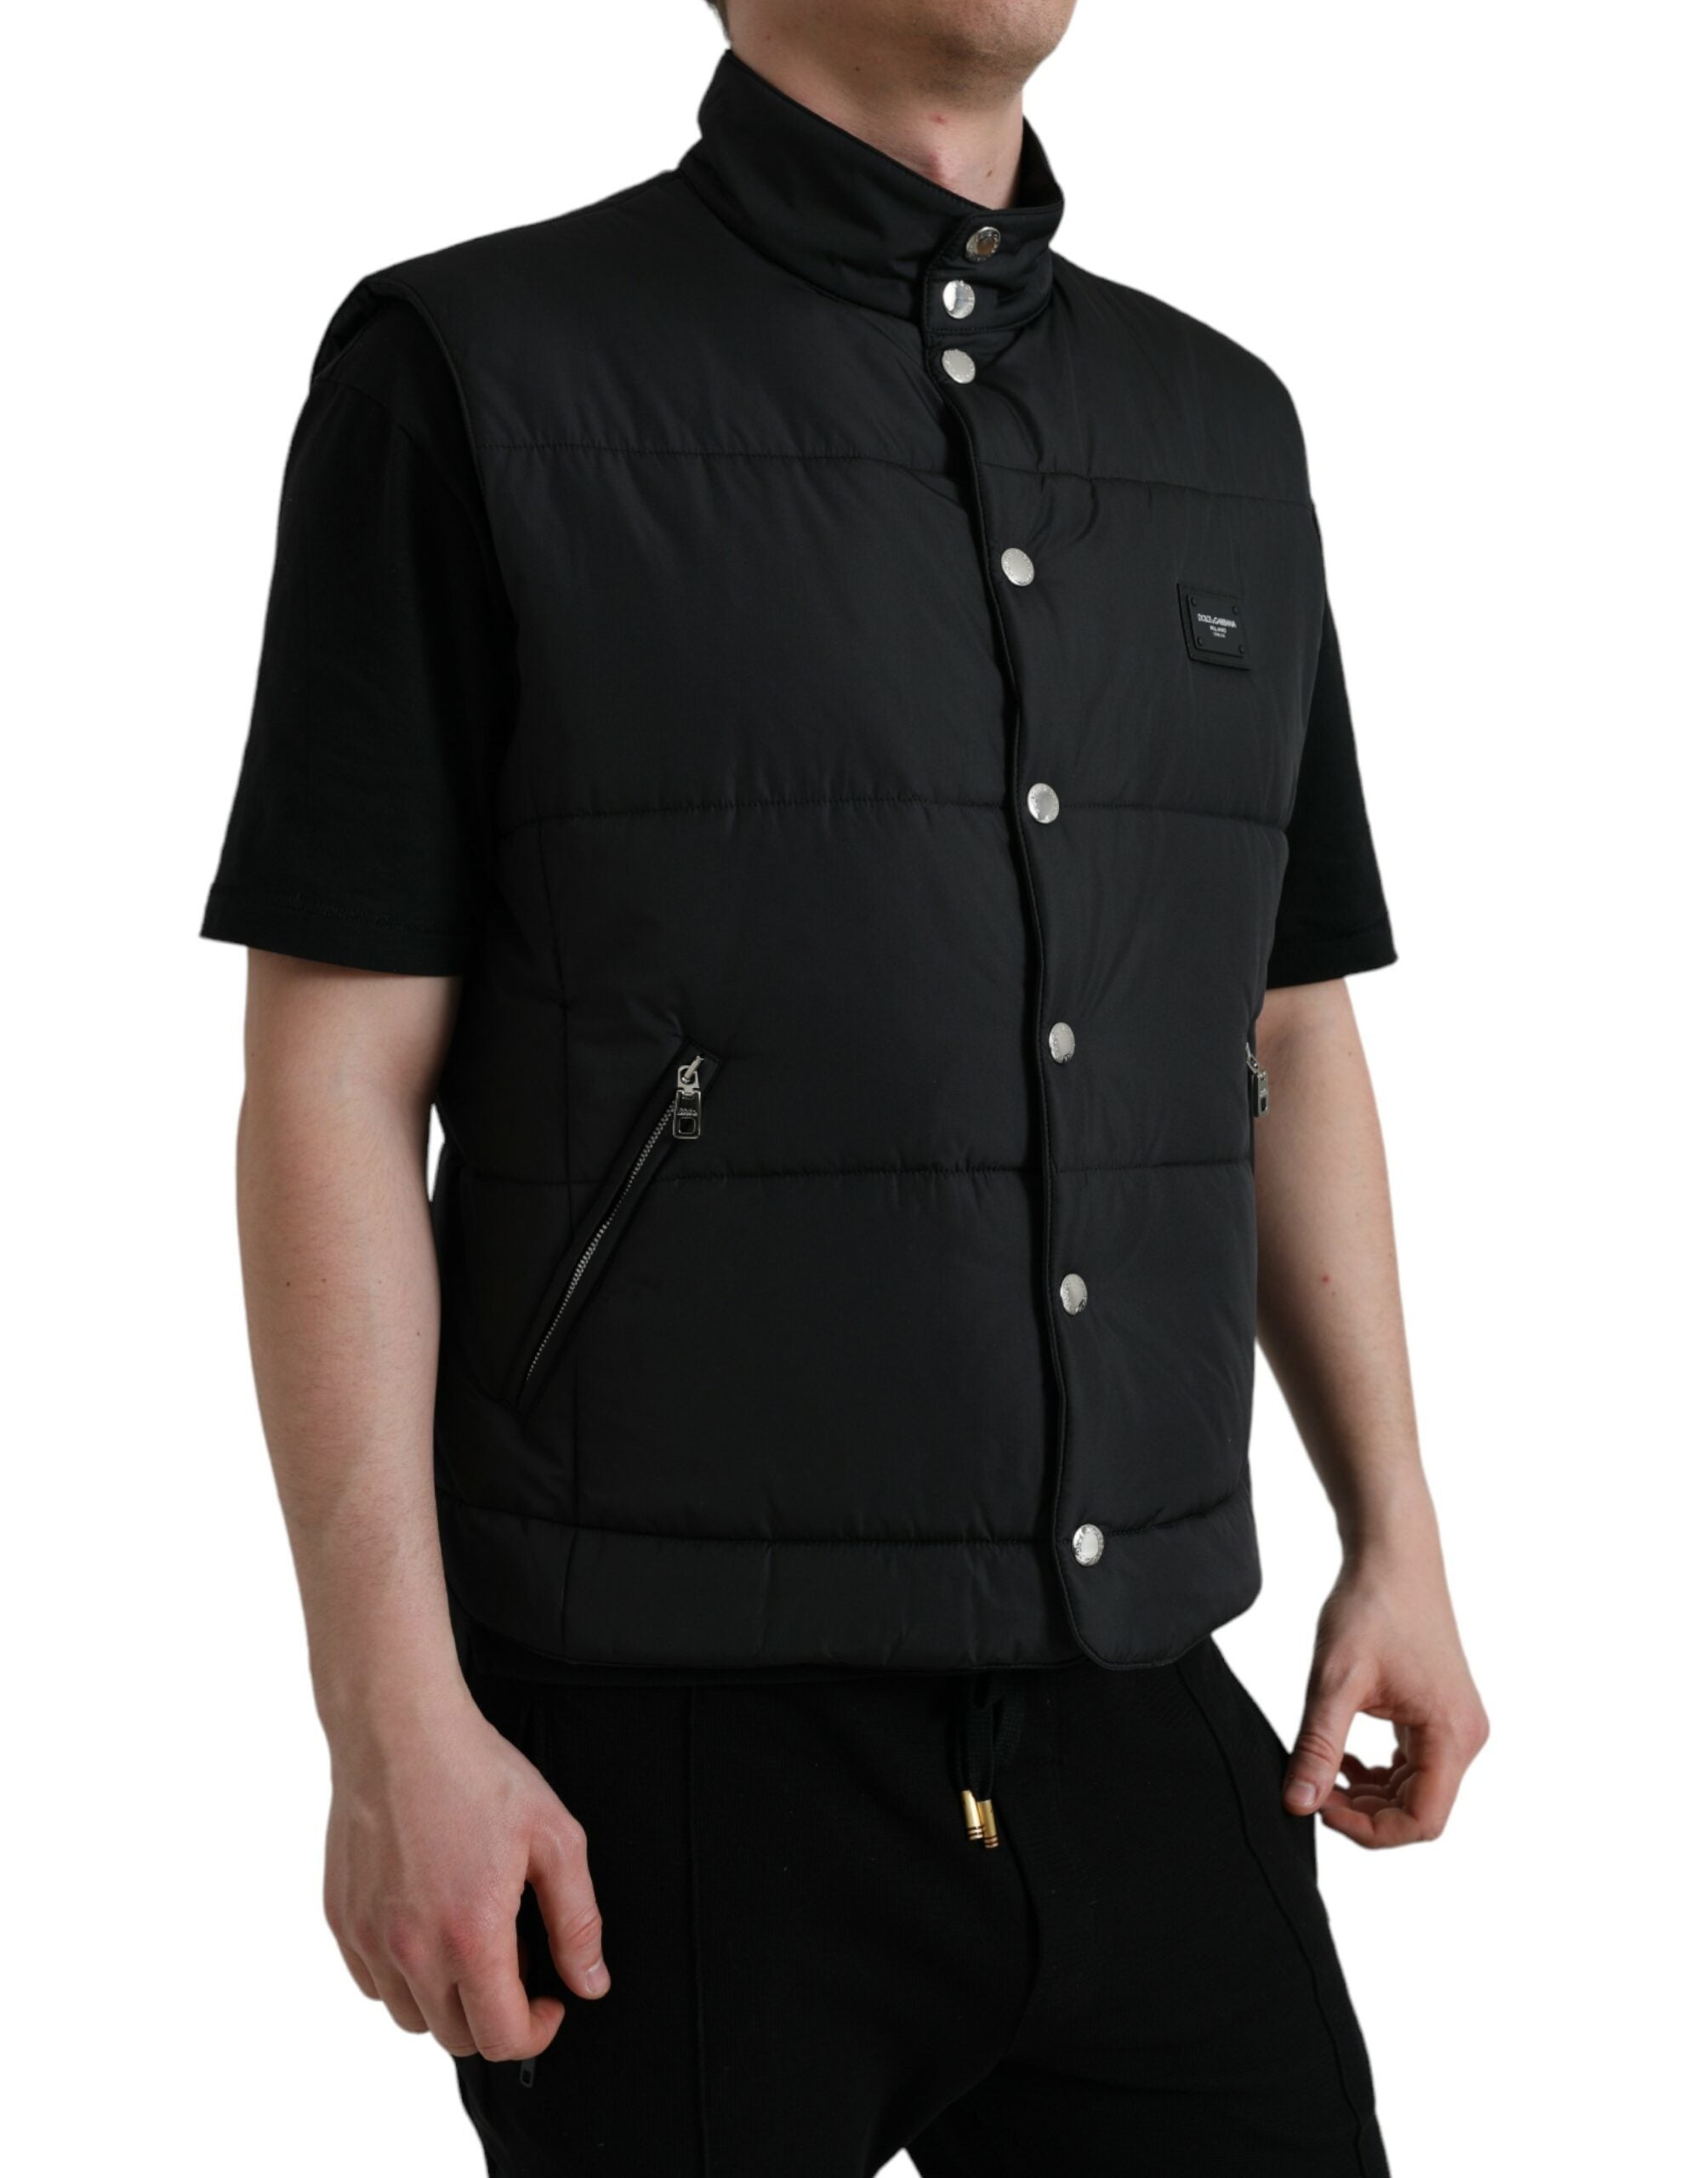 Sleek Black High-Neck Vest Jacket